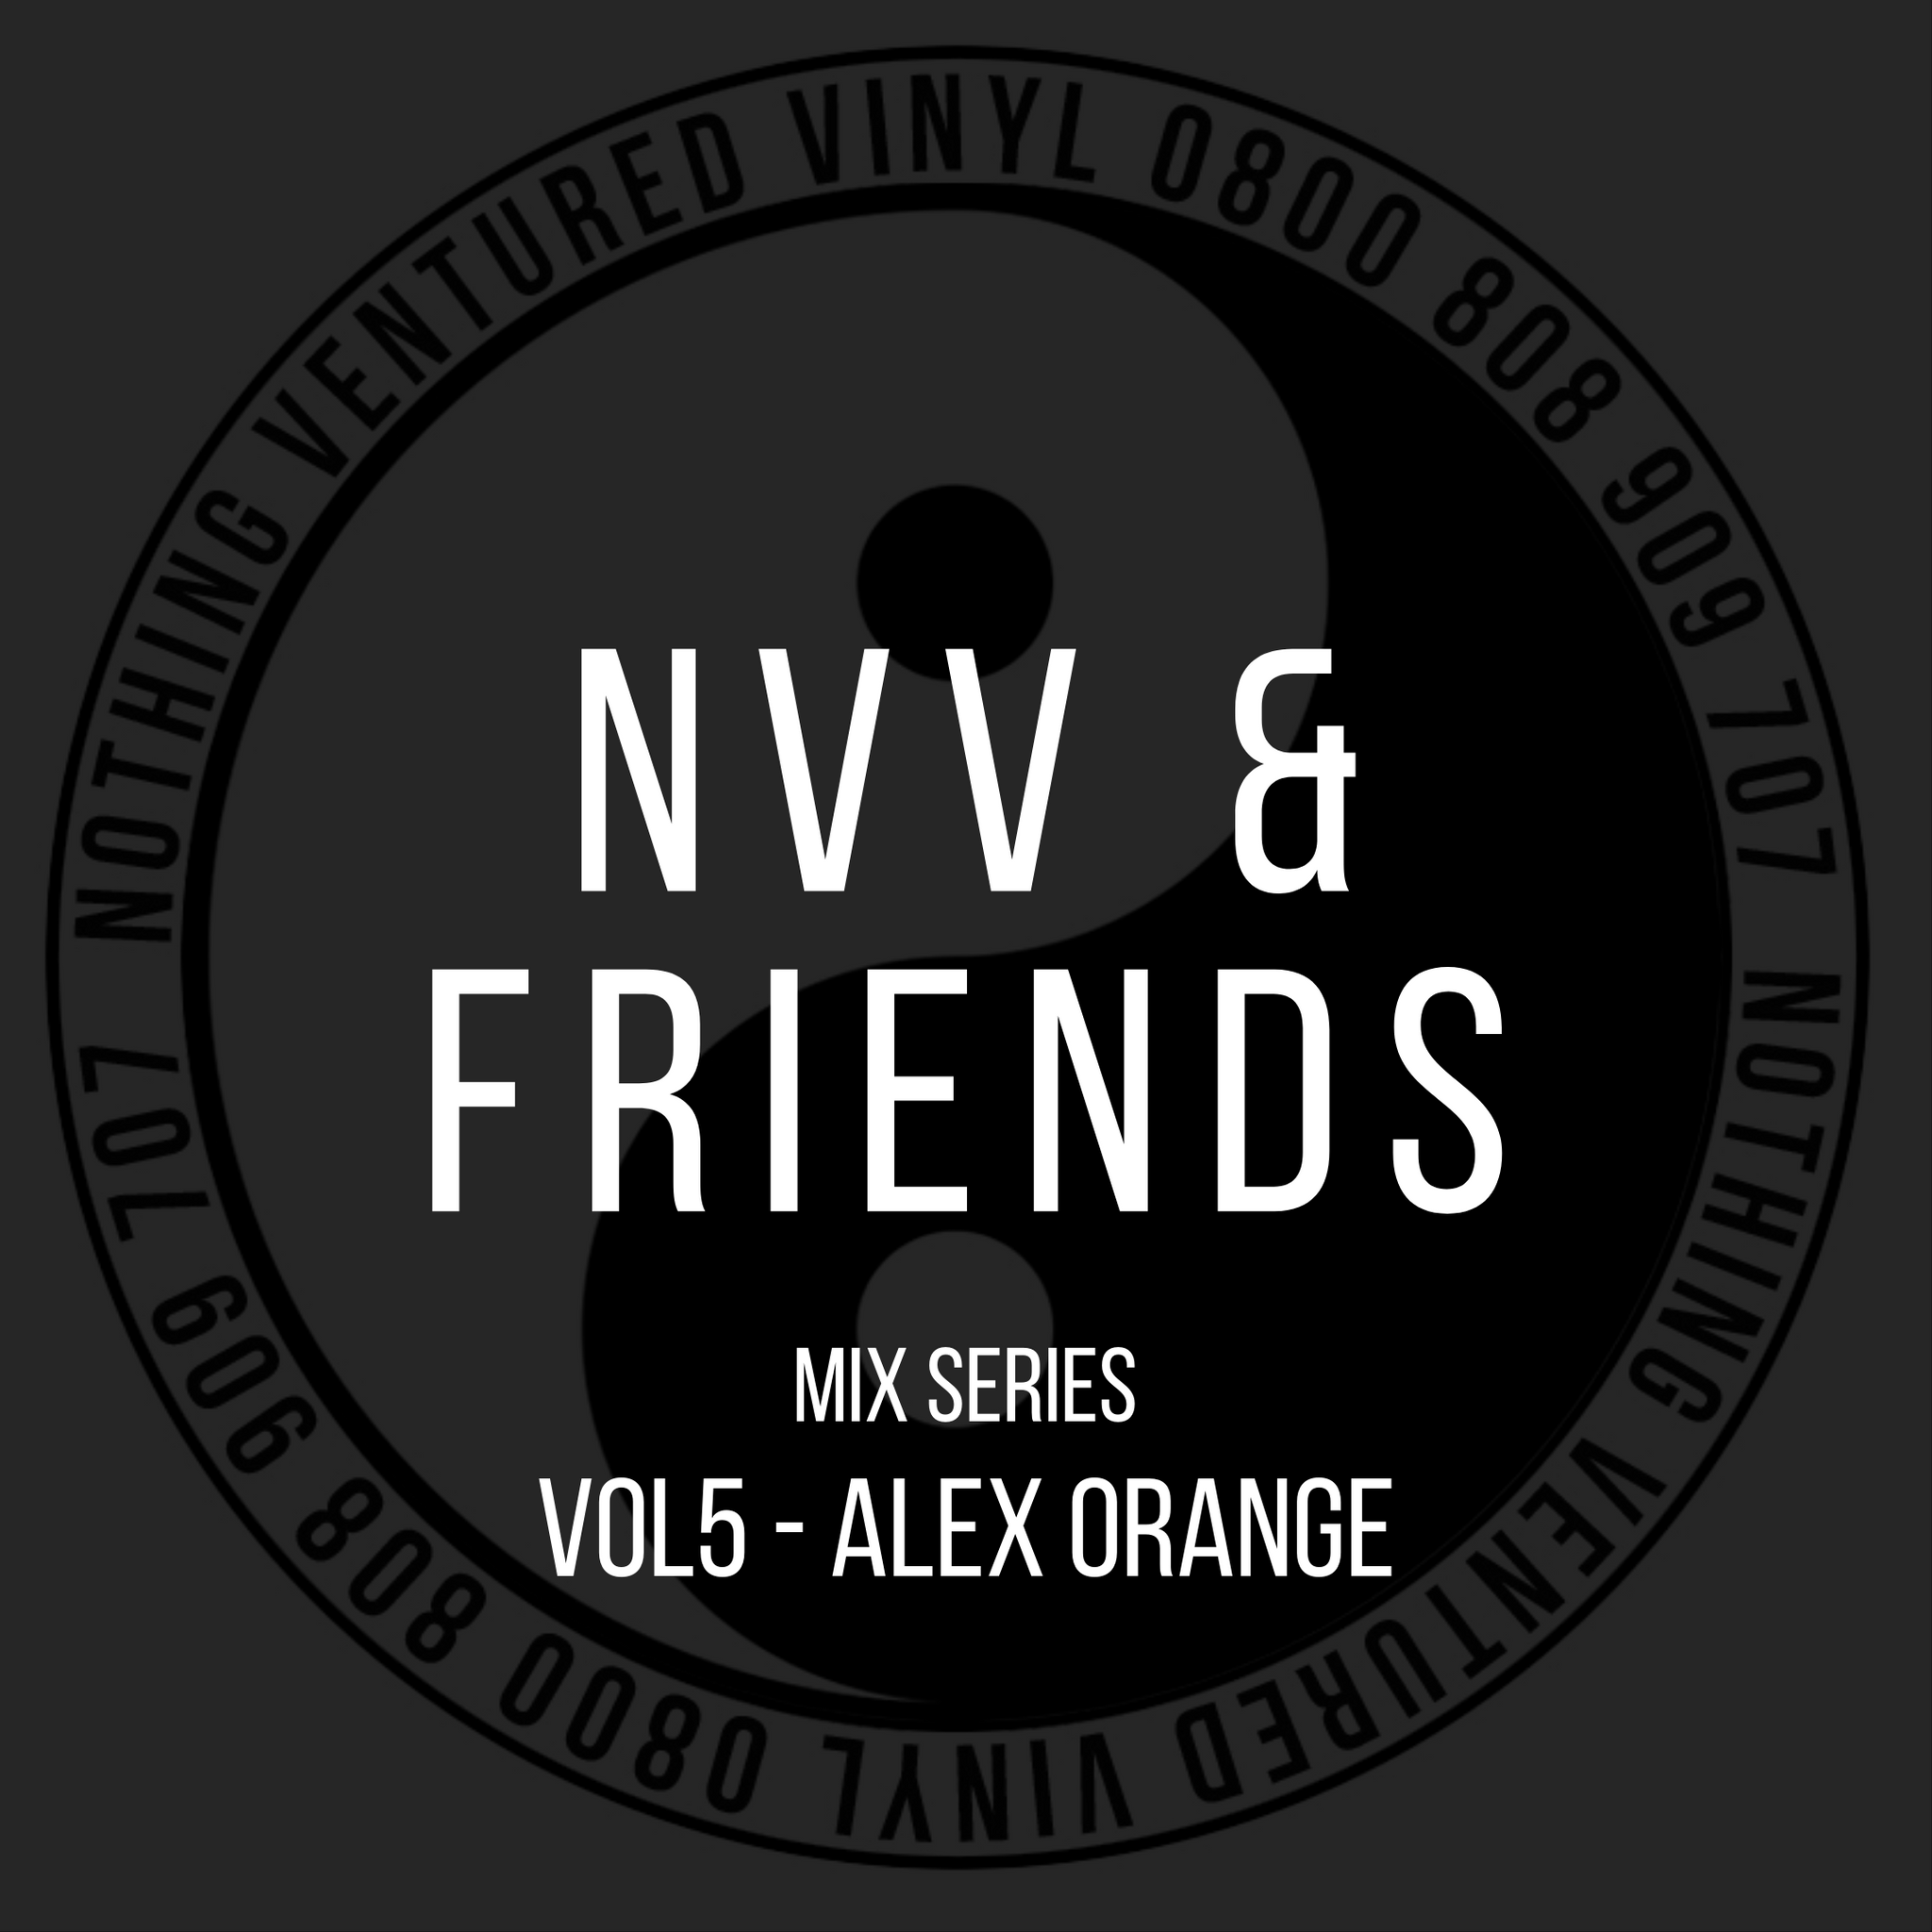 NVV & FRIENDS VOL 5 - ALEX ORANGE